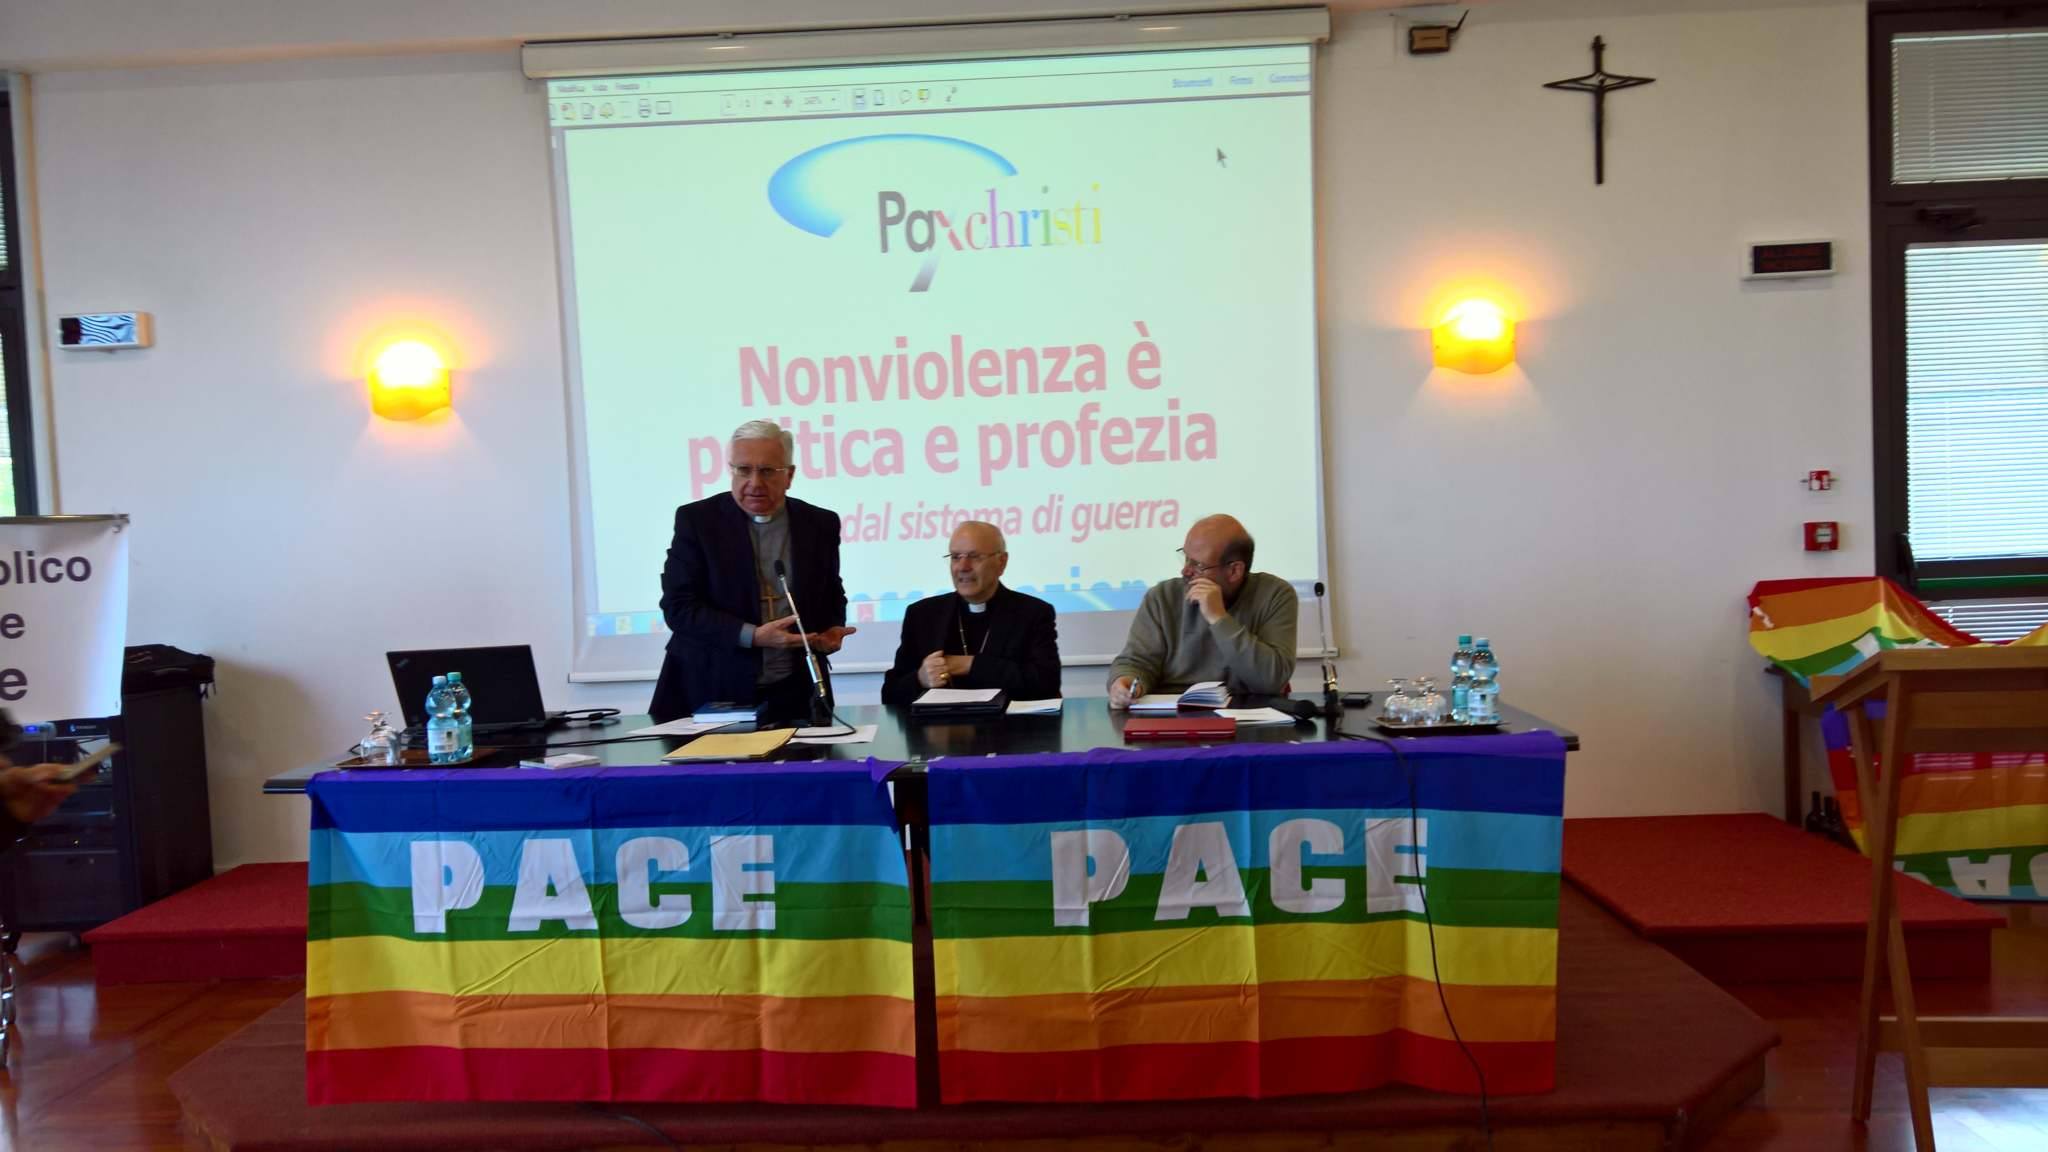 congresso pax christi italia